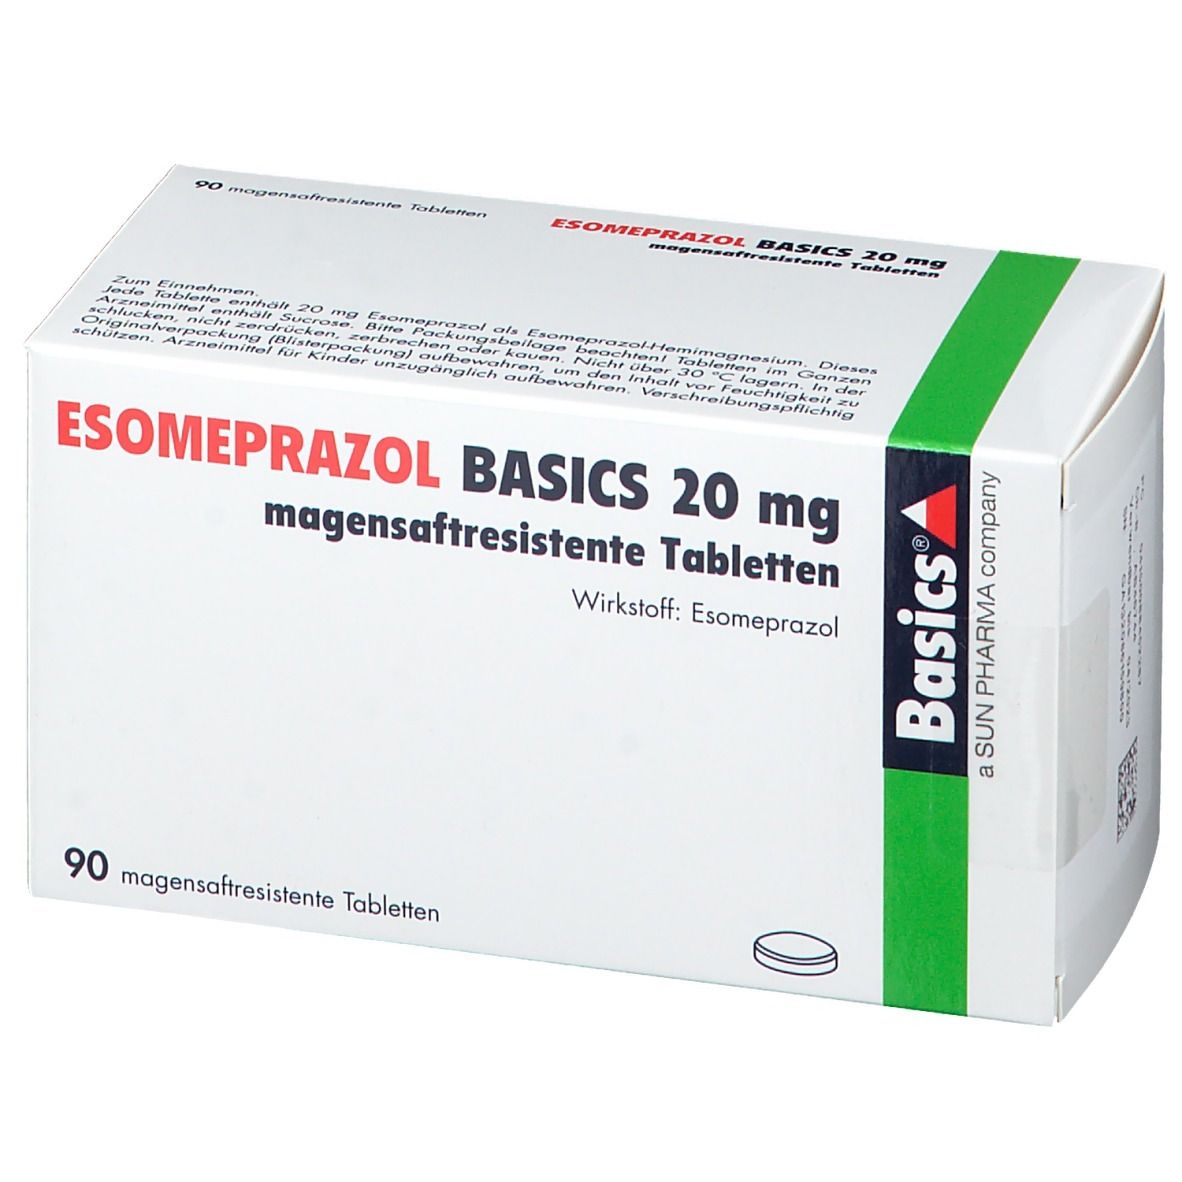 ESOMEPRAZOL BASICS 20 mg